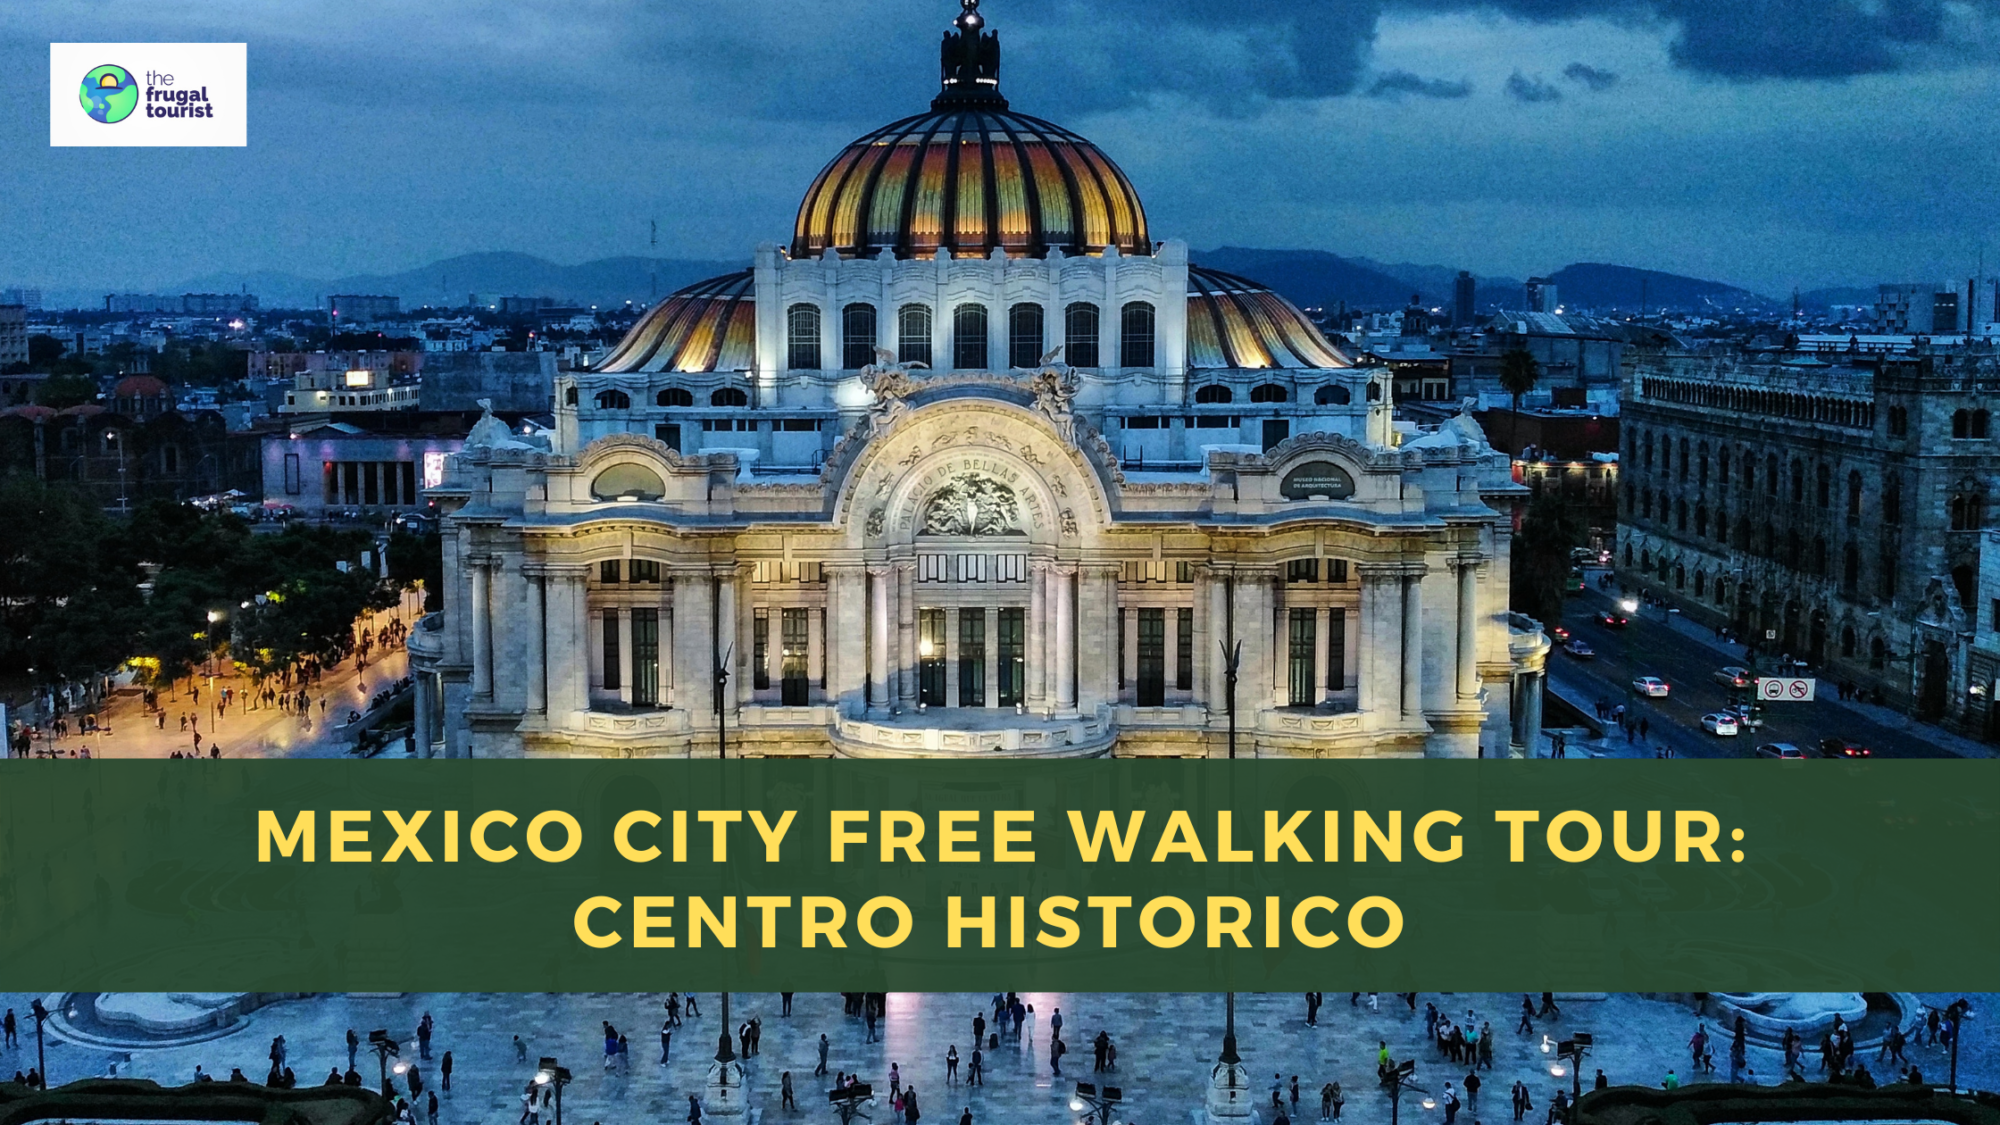 Mexico City Free Walking Tour: Centro Historico